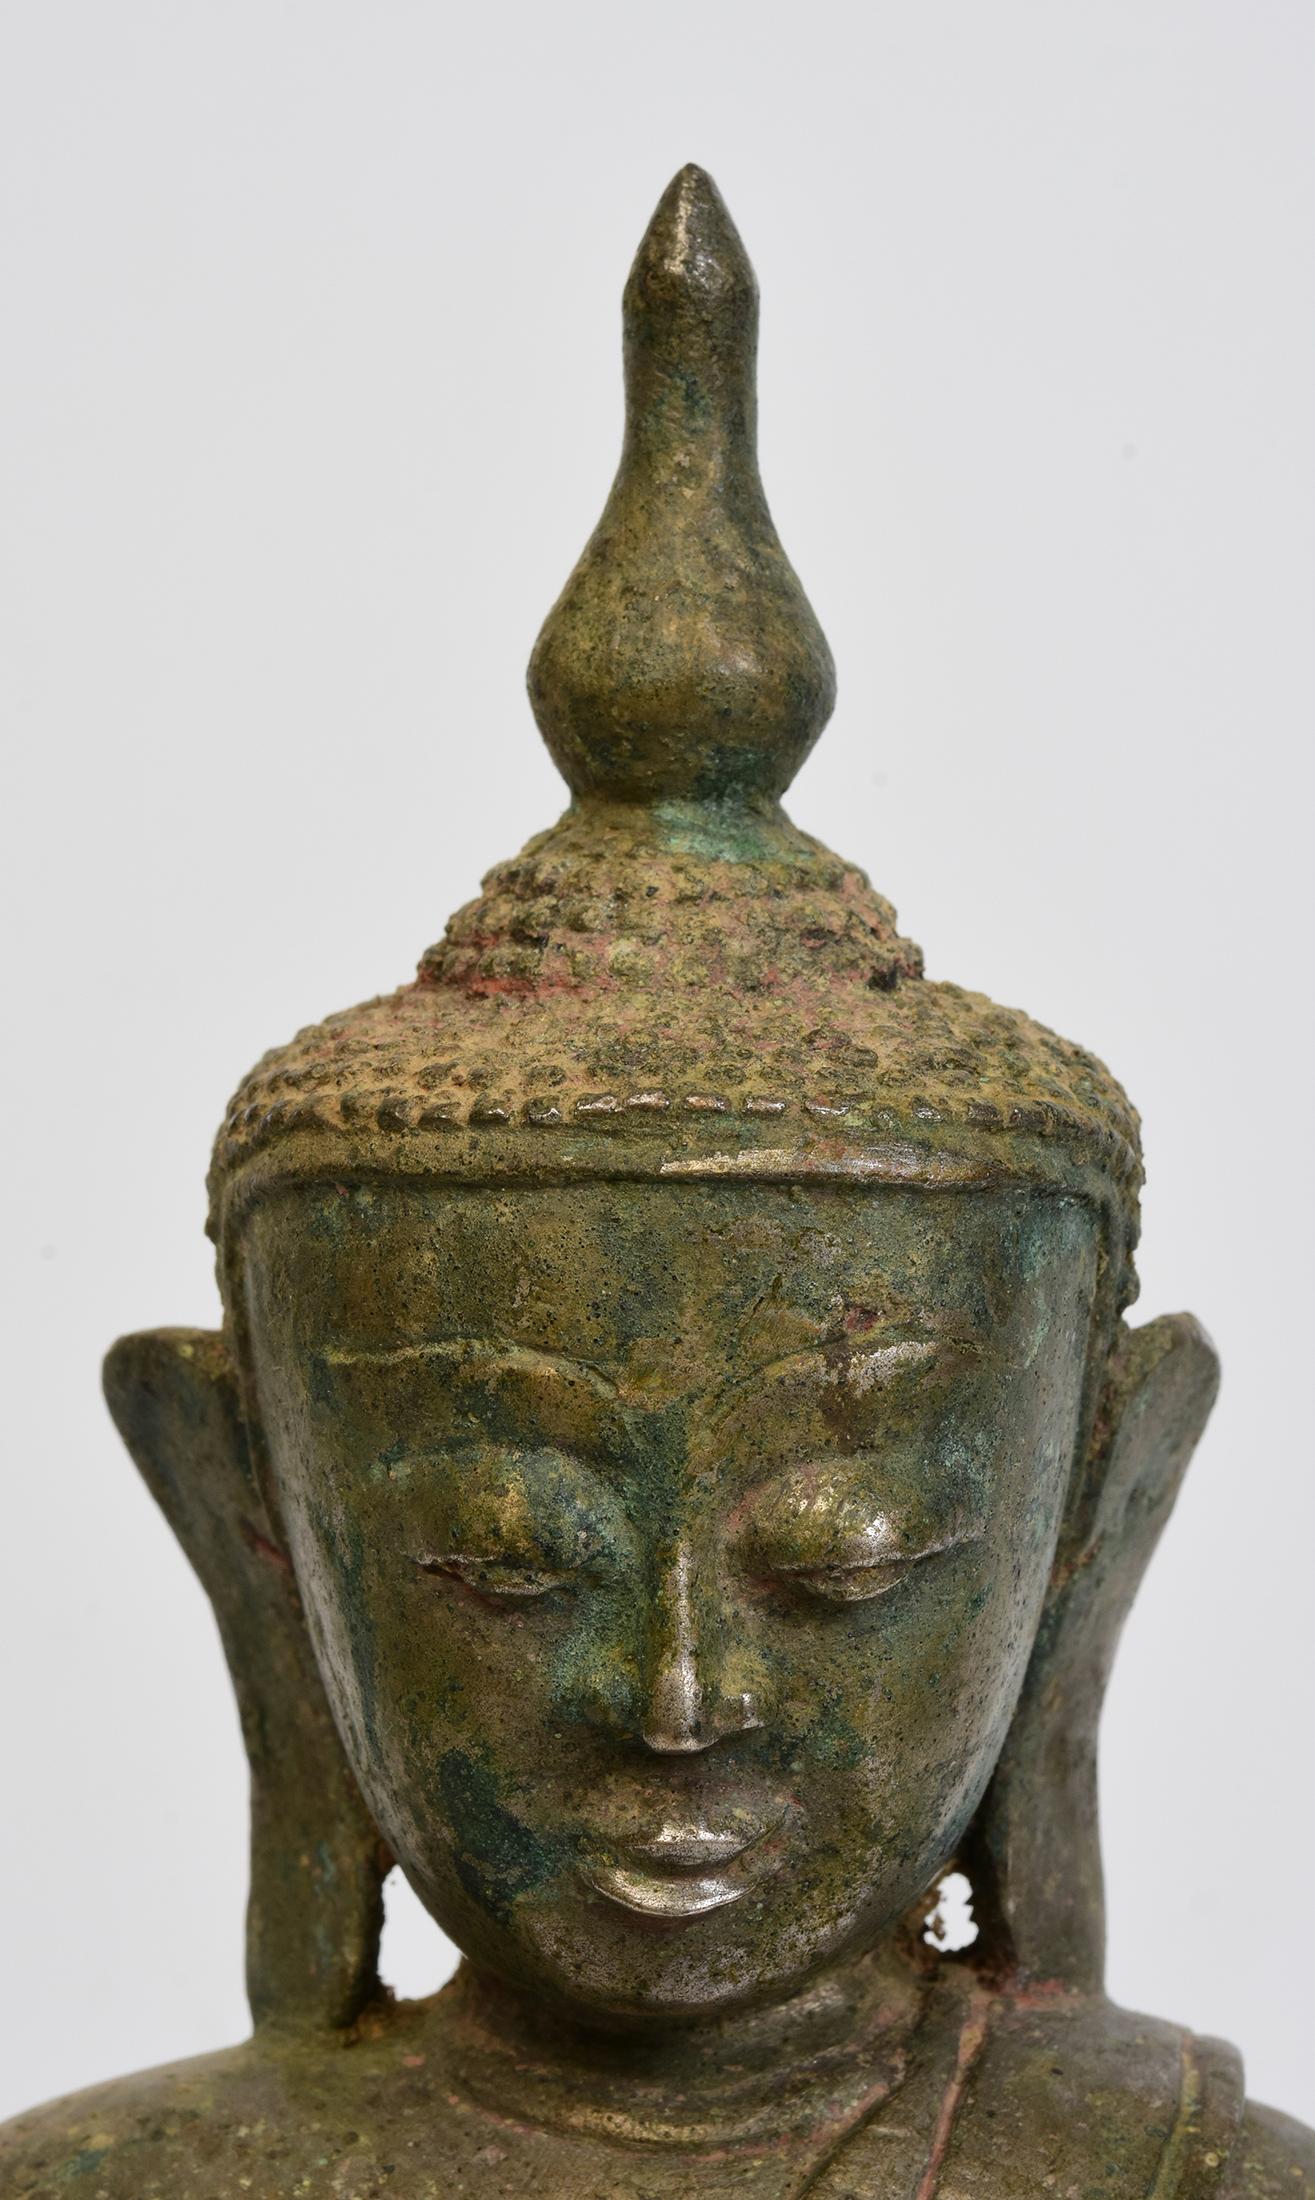 Bouddha ancien en bronze de Birmanie assis dans la posture de Mara Vijaya (appelant la terre à témoigner) sur une double base de lotus.

Age : Birmanie, Période Shan, 16ème siècle
Dimensions : Hauteur 31.7 C.M. / Largeur 18.6 C.M. / Profondeur 13